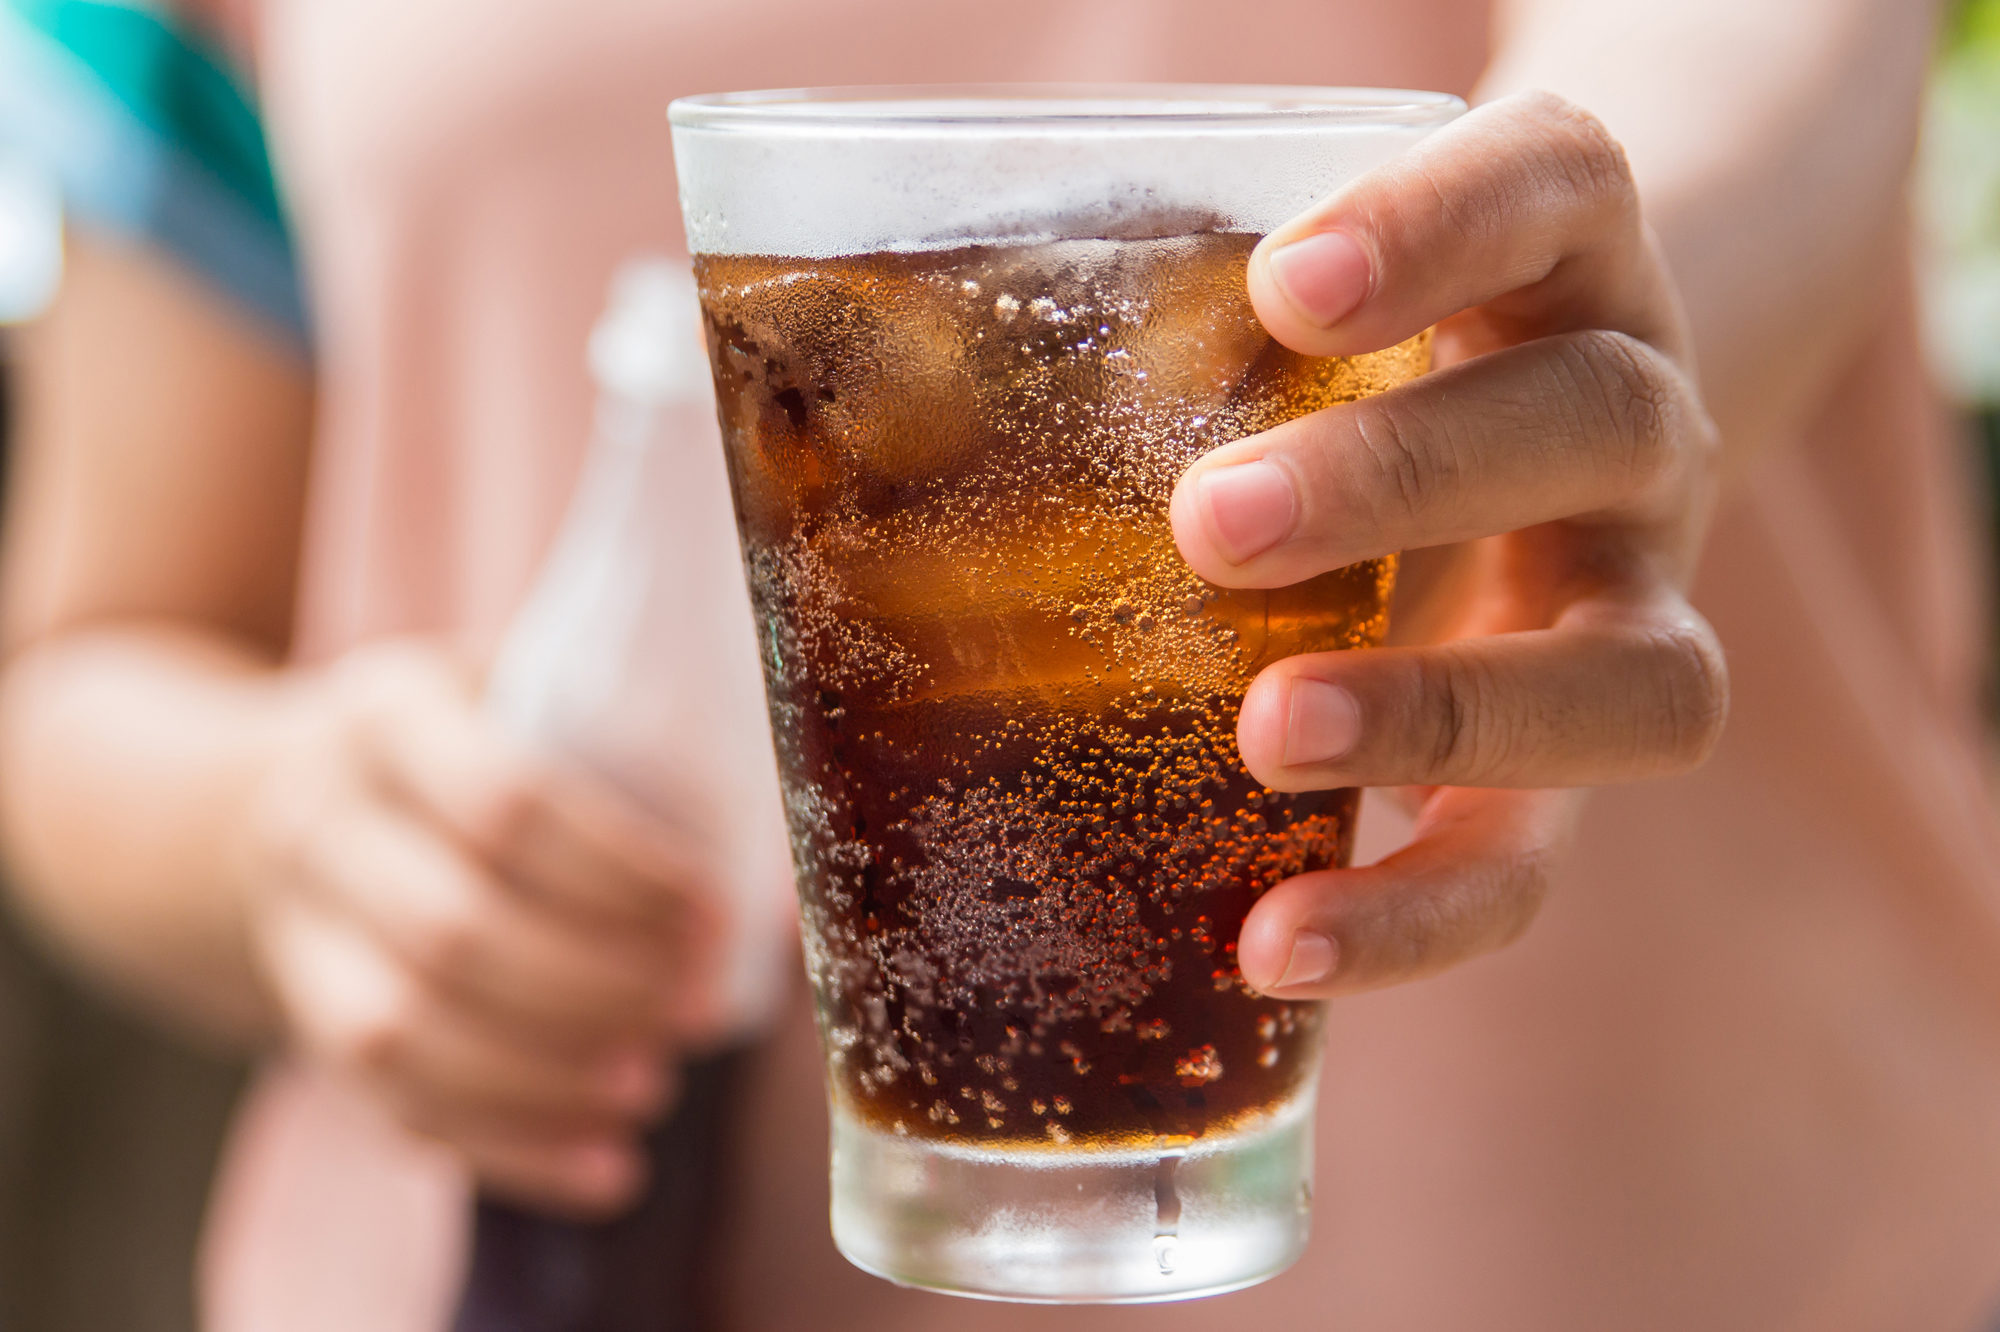 Bevande zuccherate, come cambiano i consumi nel mondo?